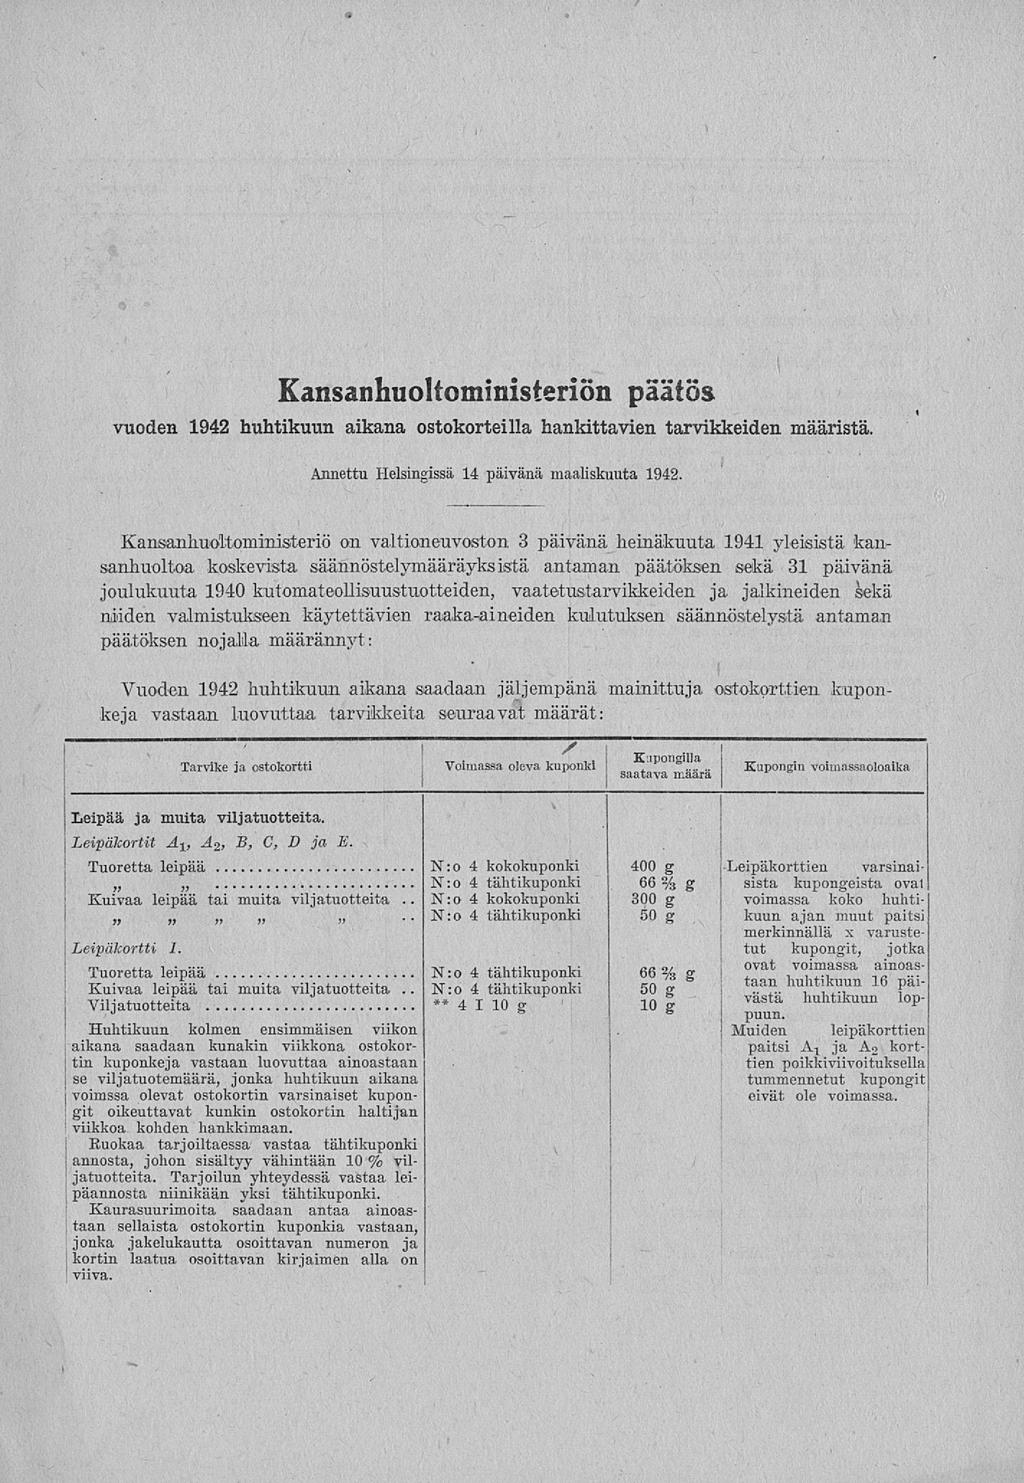 N:o N:o N:o " Kansanhuoltoministeriön päätös vuoden 1942 huhtikuun aikana ostokorteilla hankittavien tarvikkeiden määristä. Annettu Helsingissä 14 päivänä maaliskuuta 1942.